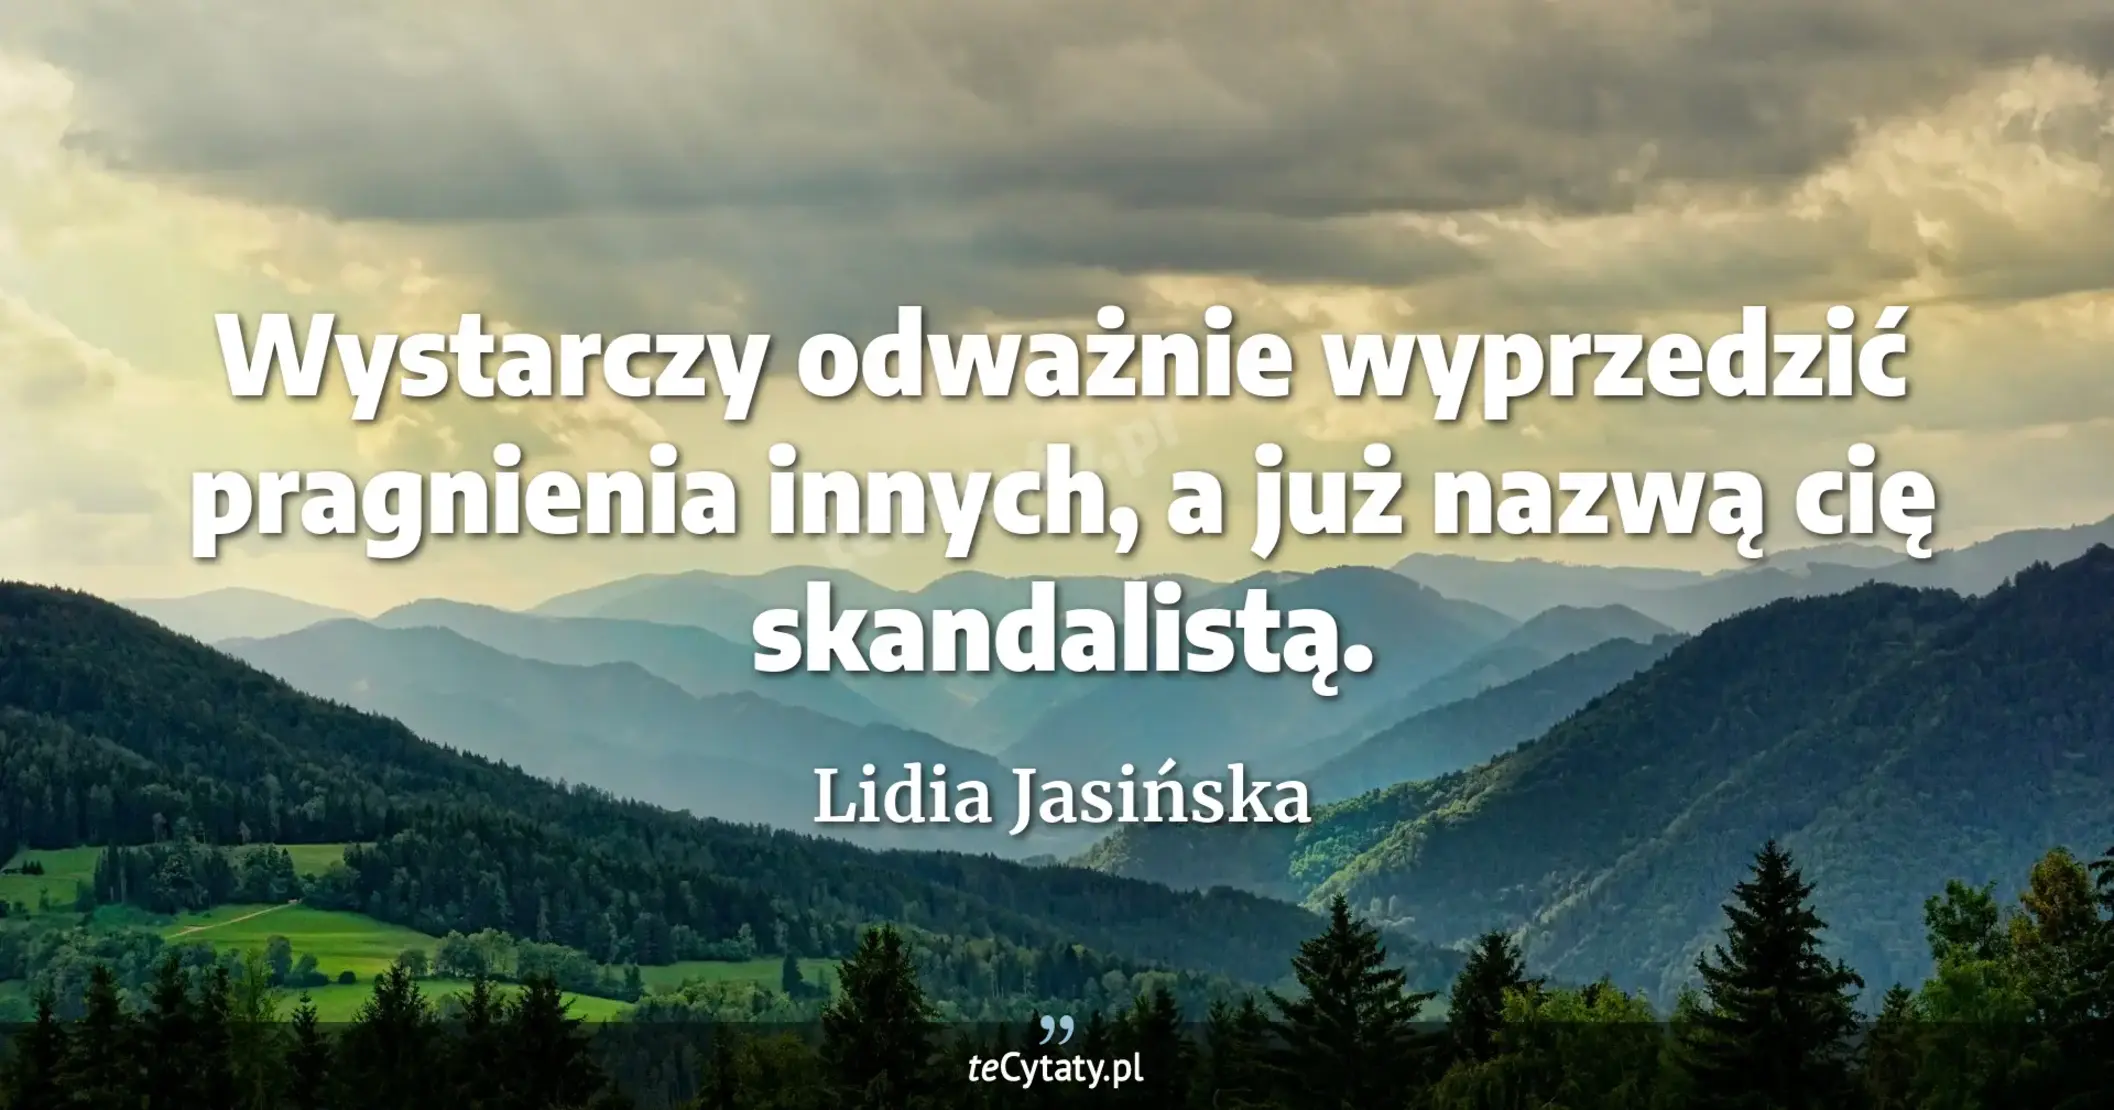 Wystarczy odważnie wyprzedzić pragnienia innych, a już nazwą cię skandalistą. - Lidia Jasińska